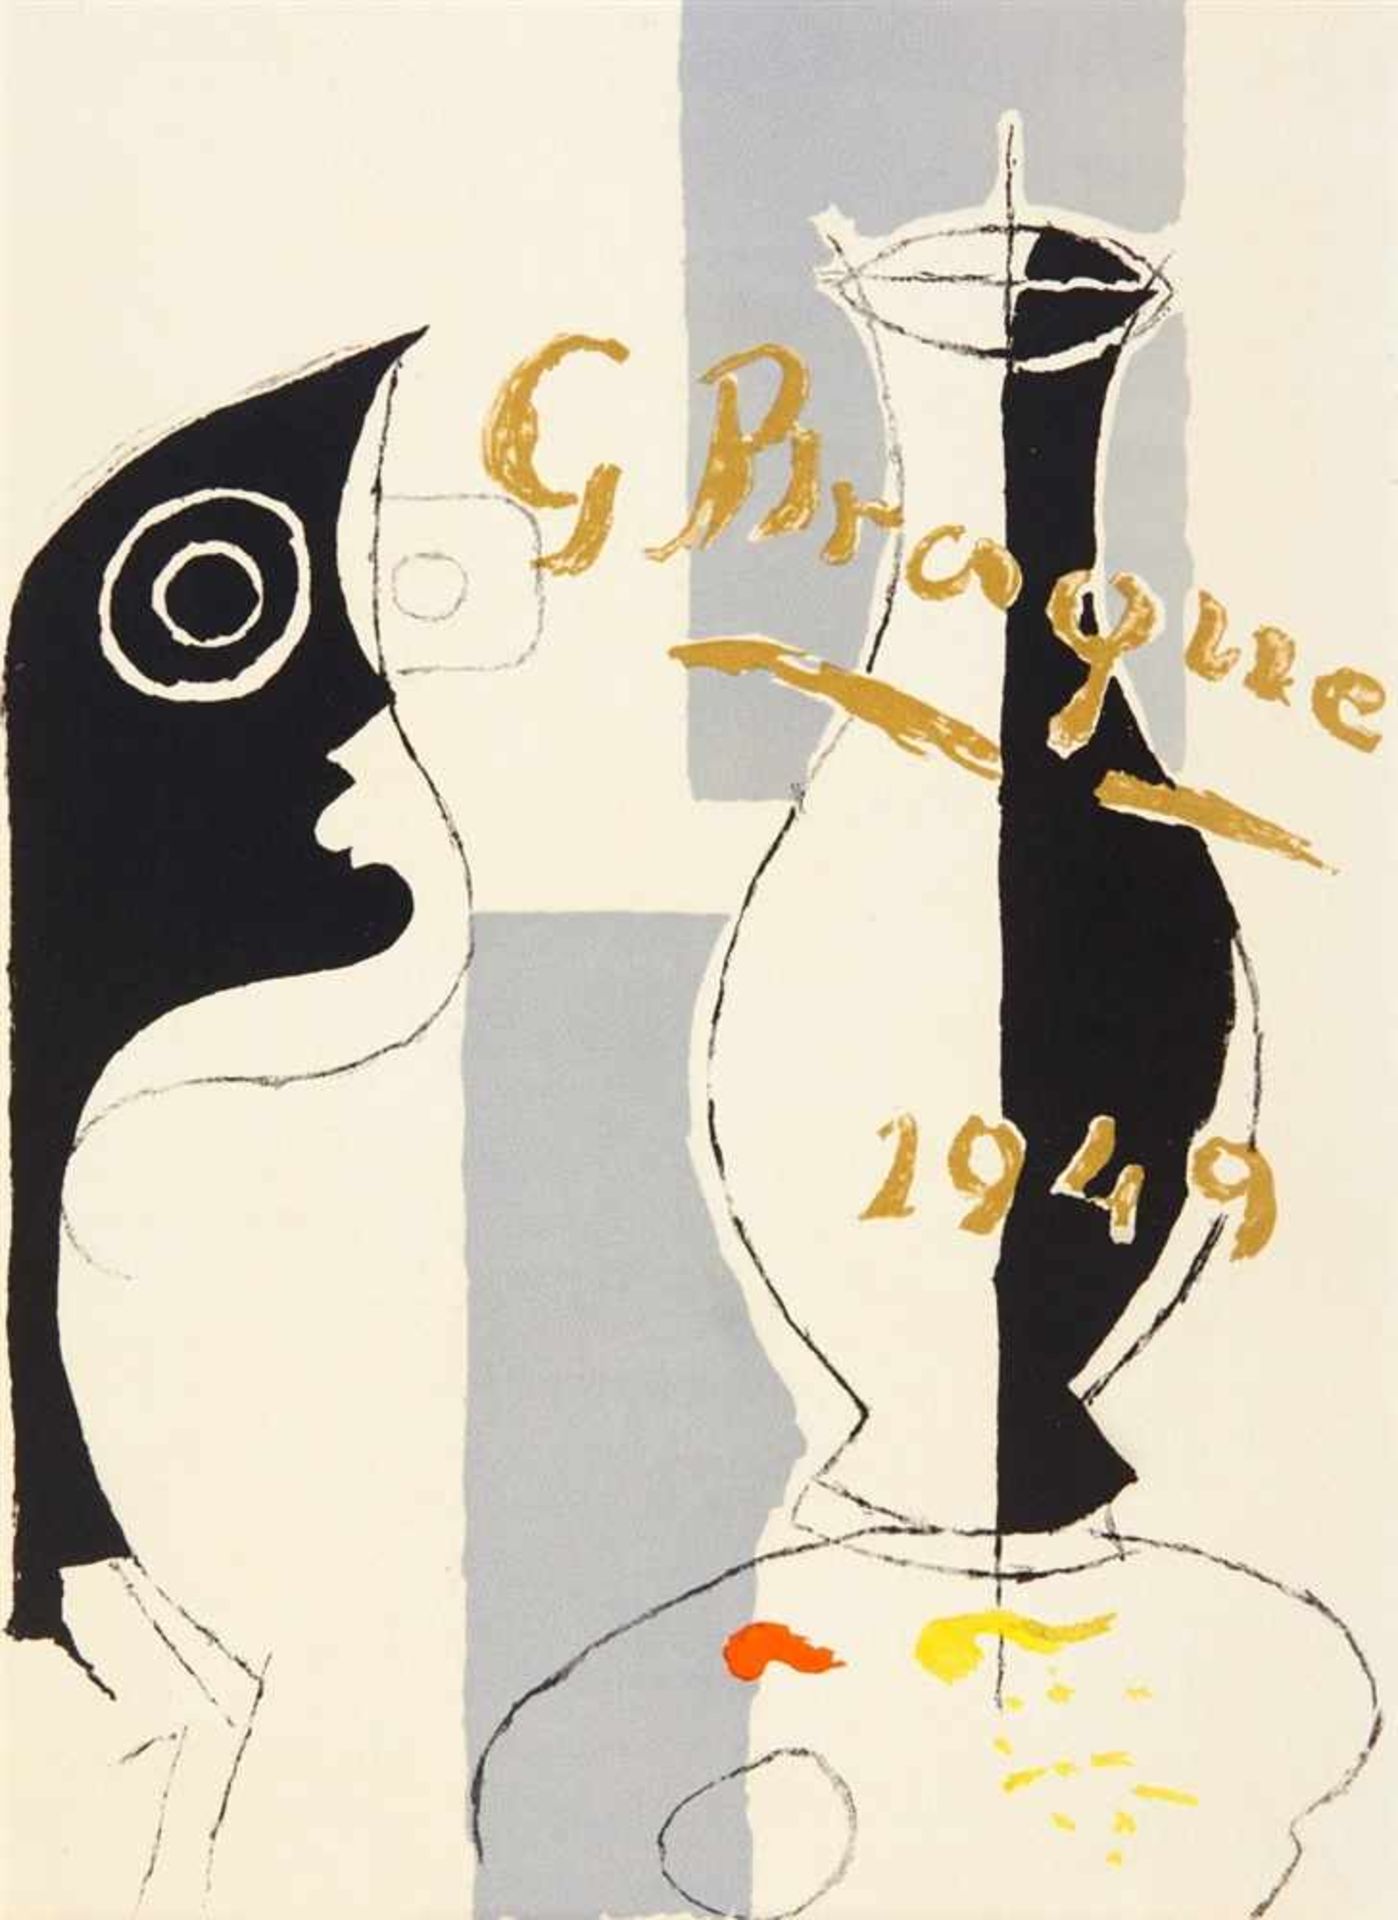 BRAQUE, GEORGEPIERRE REVERDY: Une Aventure méthodique. Paris: Mourlot 1949 (-1950). 44 x 32 cm.